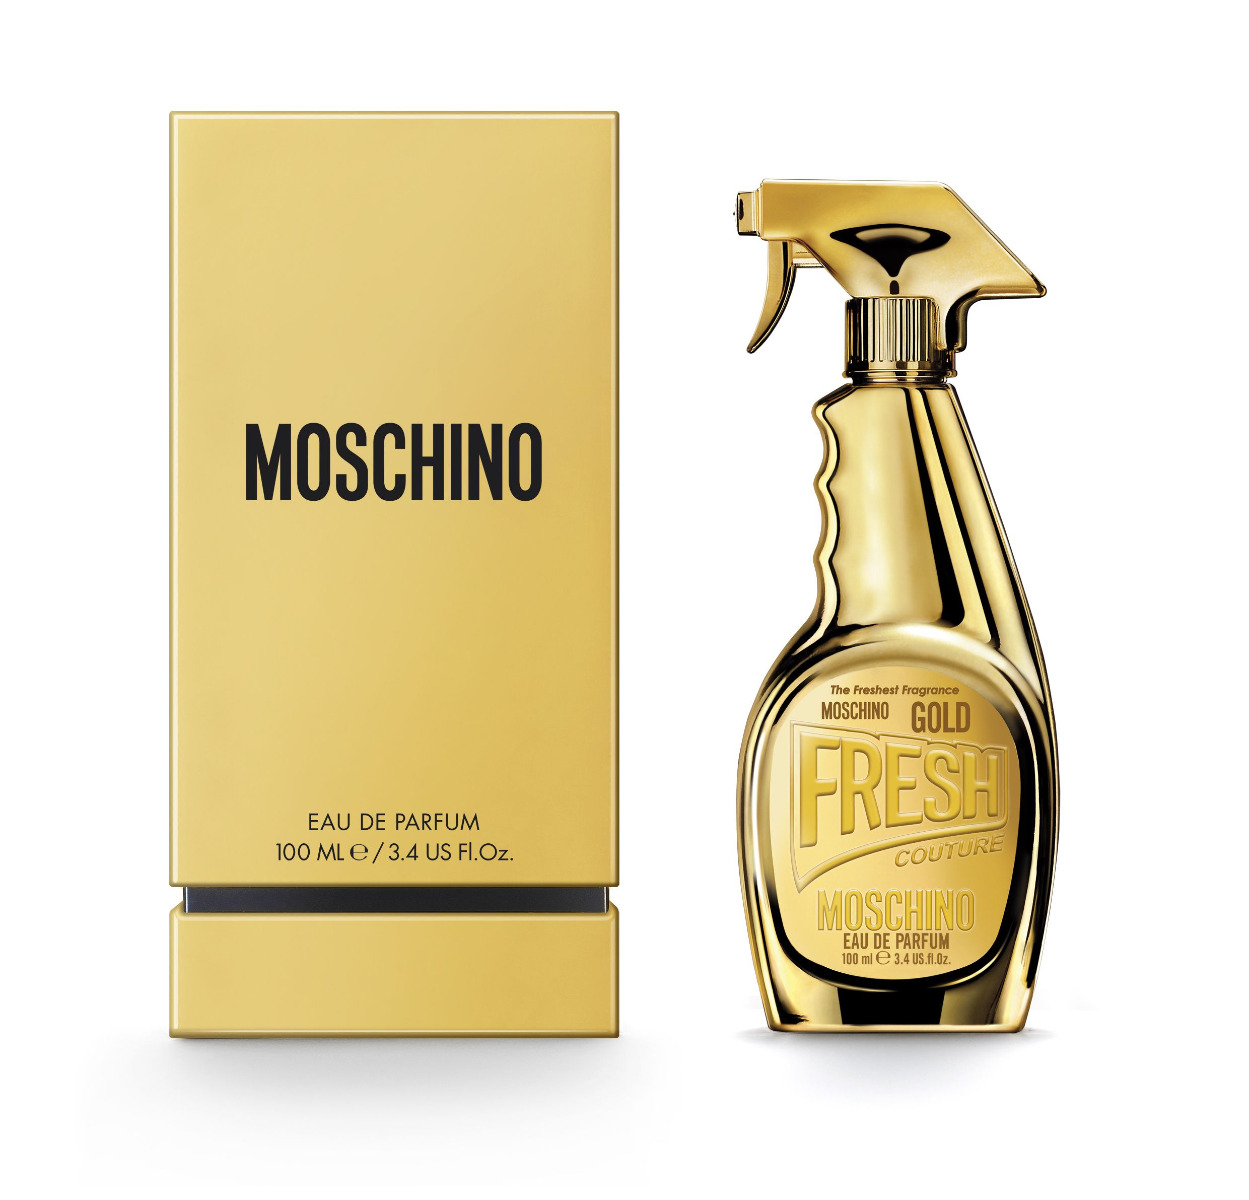 MOSCHINO Fresh Couture Gold EdP 100 ml MOSCHINO